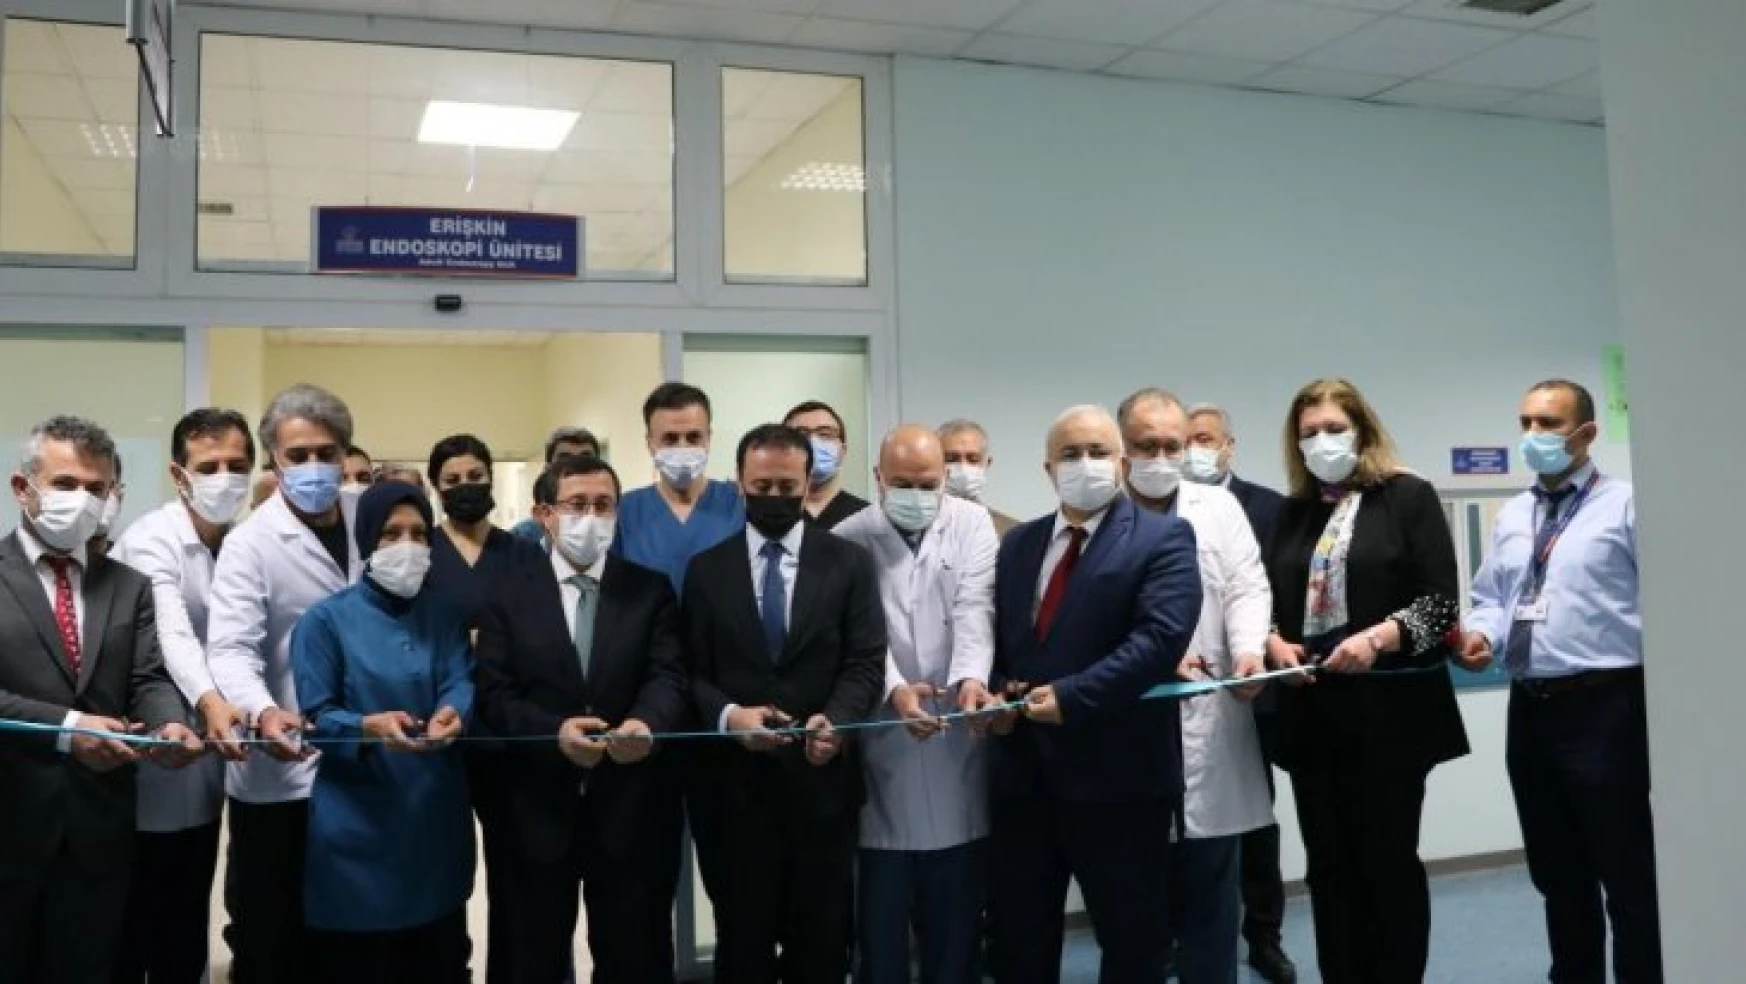 Yetişkin Endoskopi Ünitesi törenle açıldı